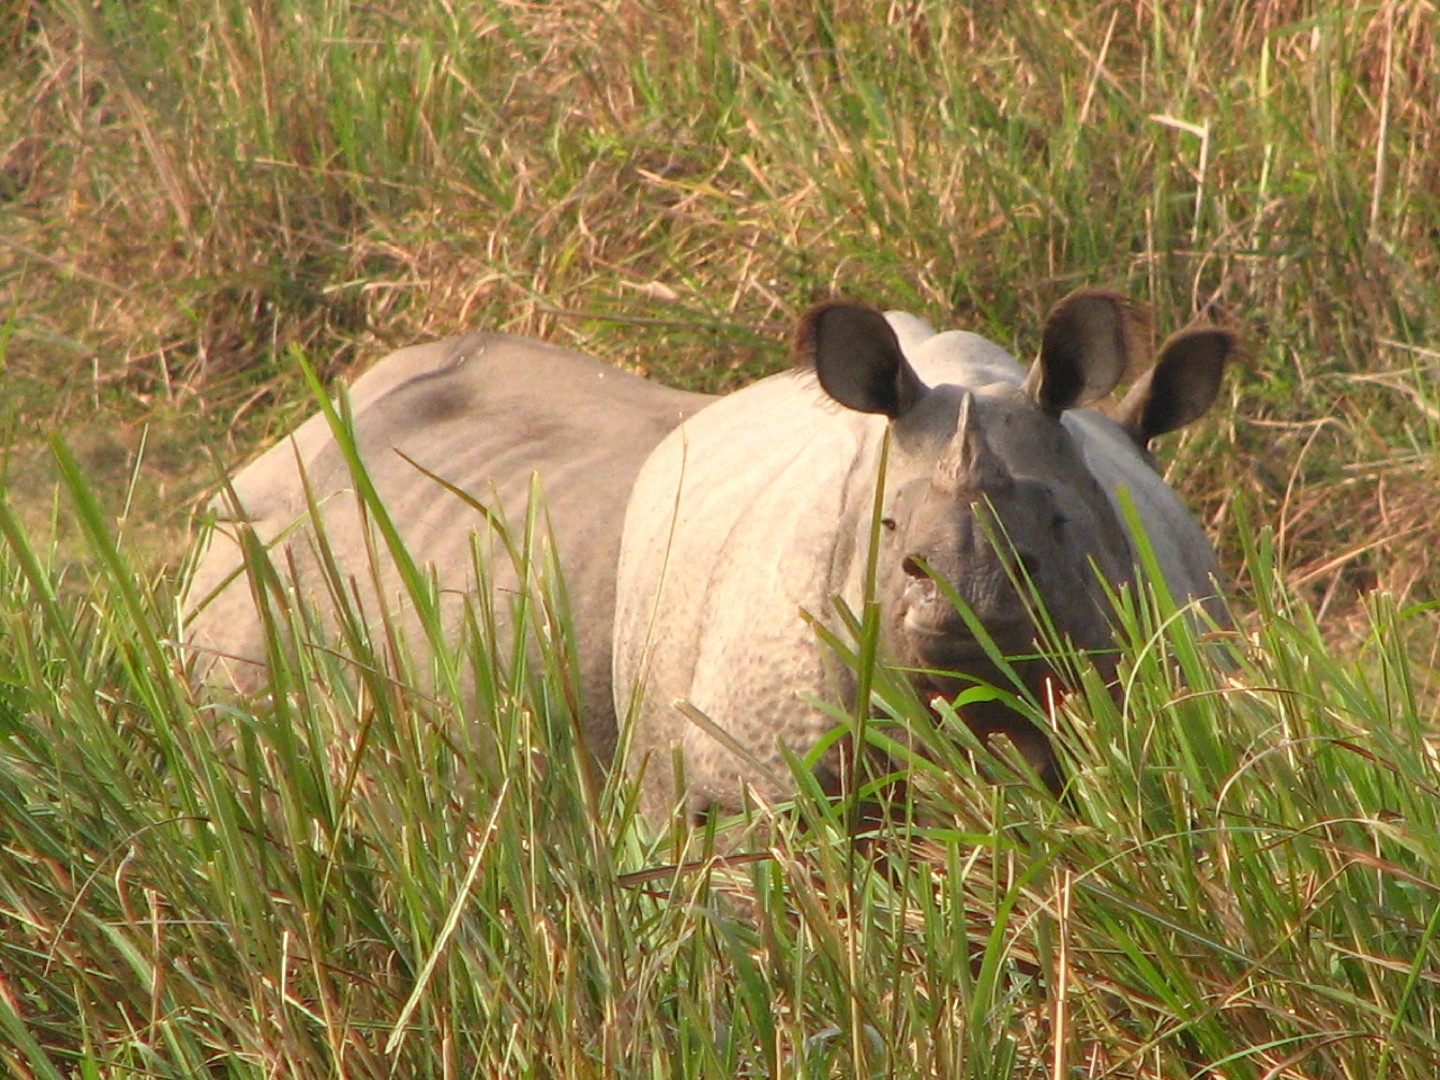 Rinocerontes de un cuerno (Rhinoceros)